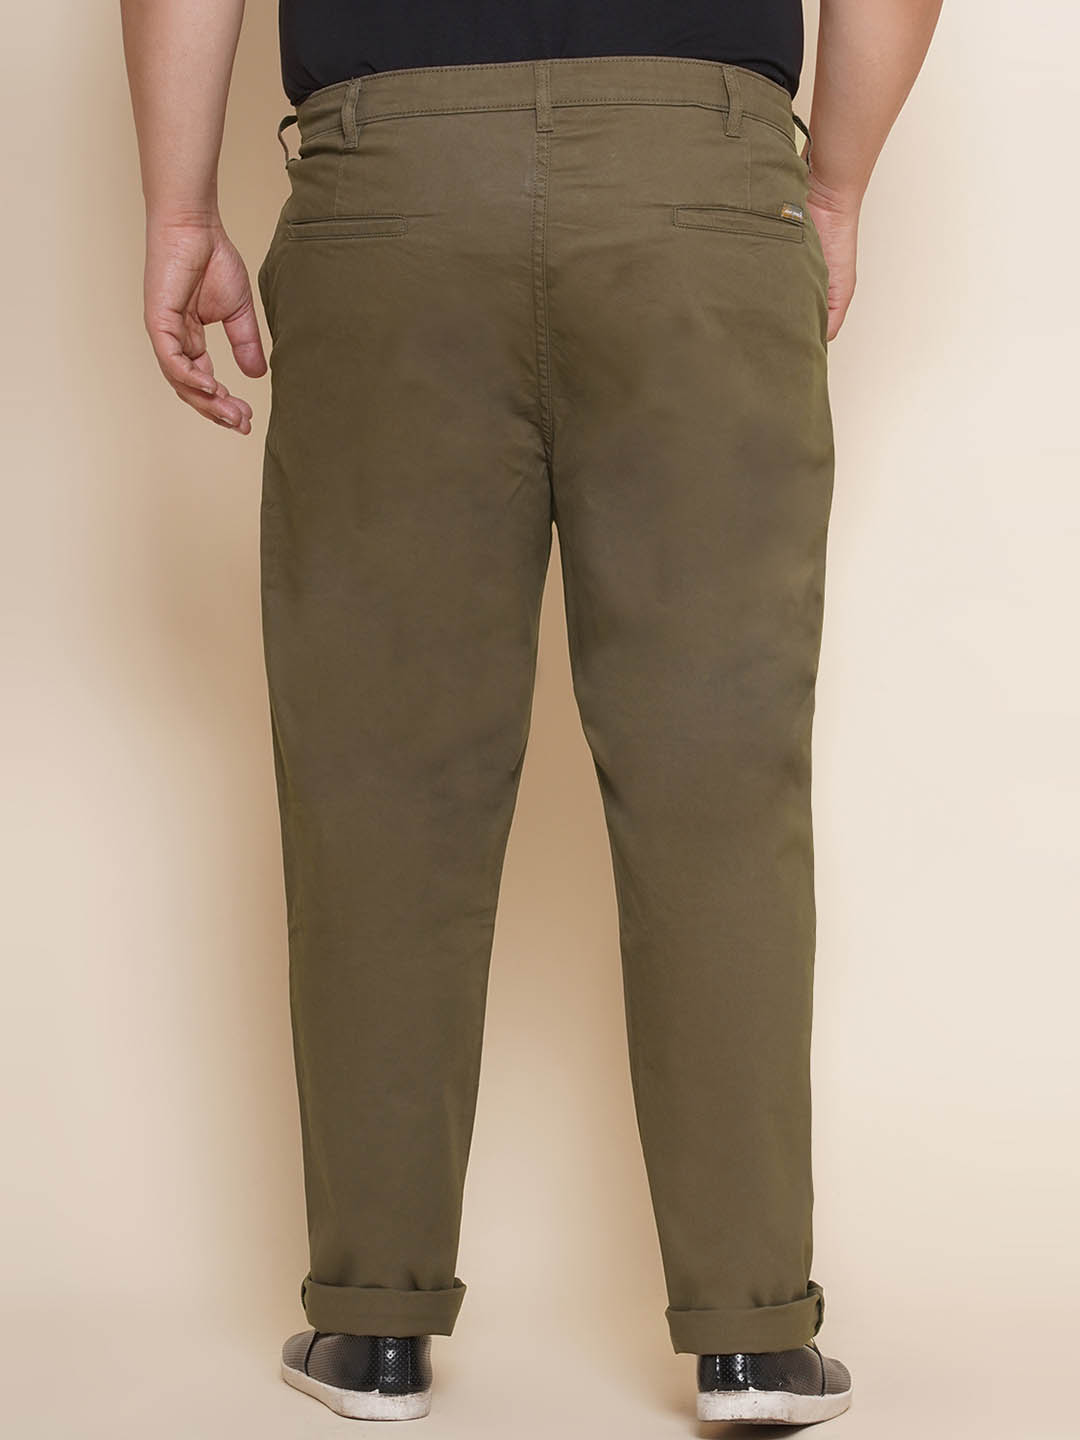 bottomwear/trousers/JPTR21013/jptr21013-5.jpg